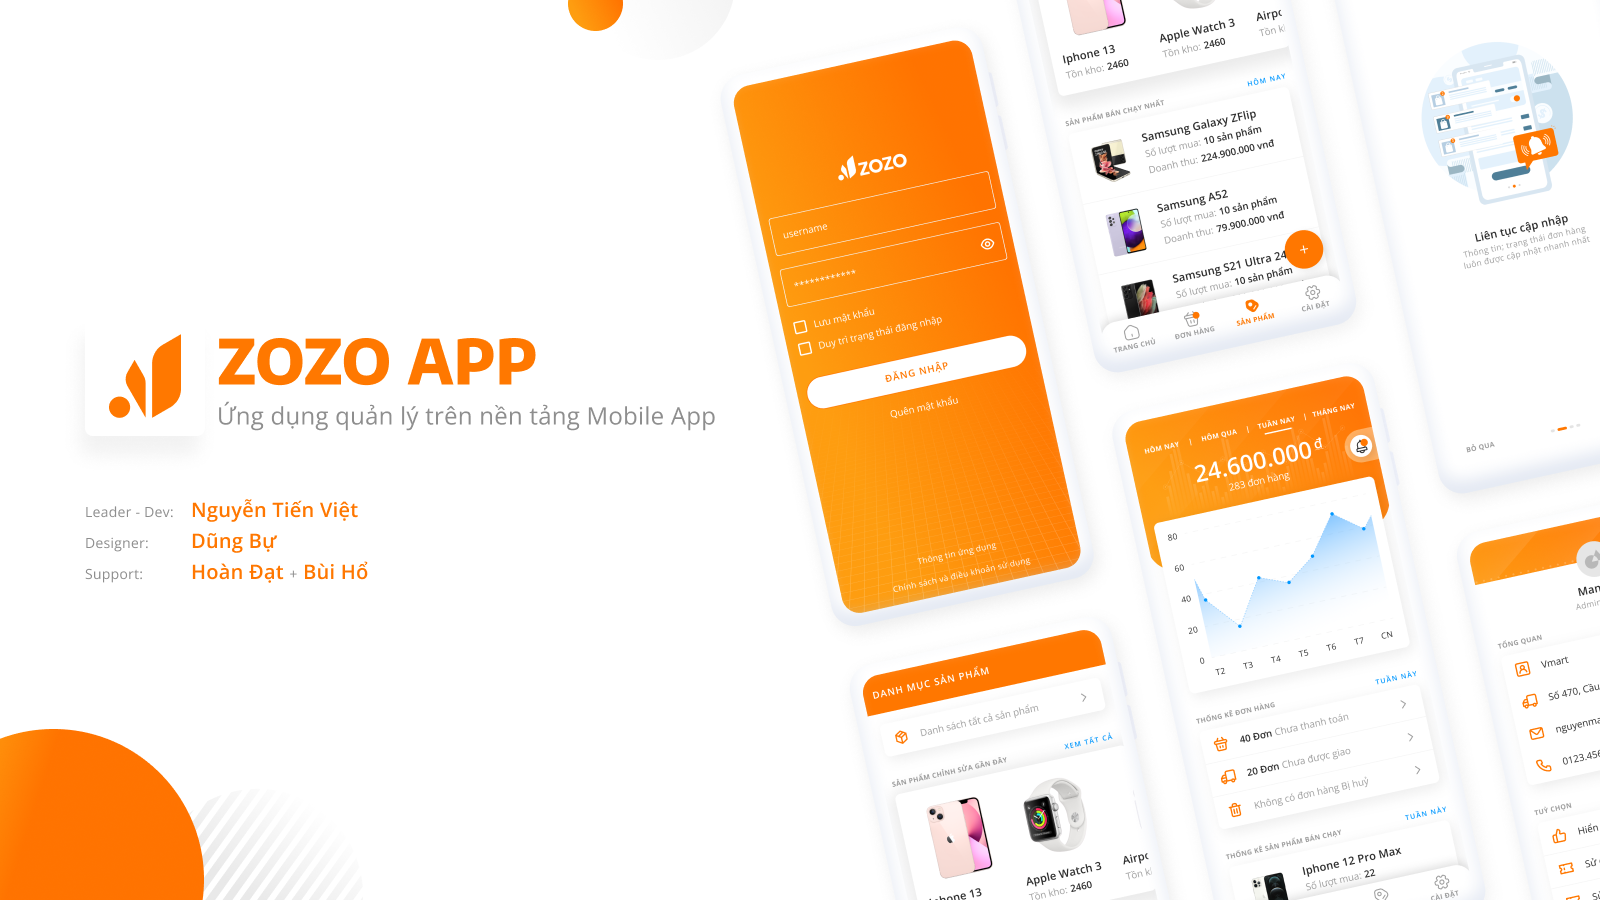 [Coming soon...] Zozo App - Ứng dụng hỗ trợ đắc lực cho các chủ shop bán hàng online